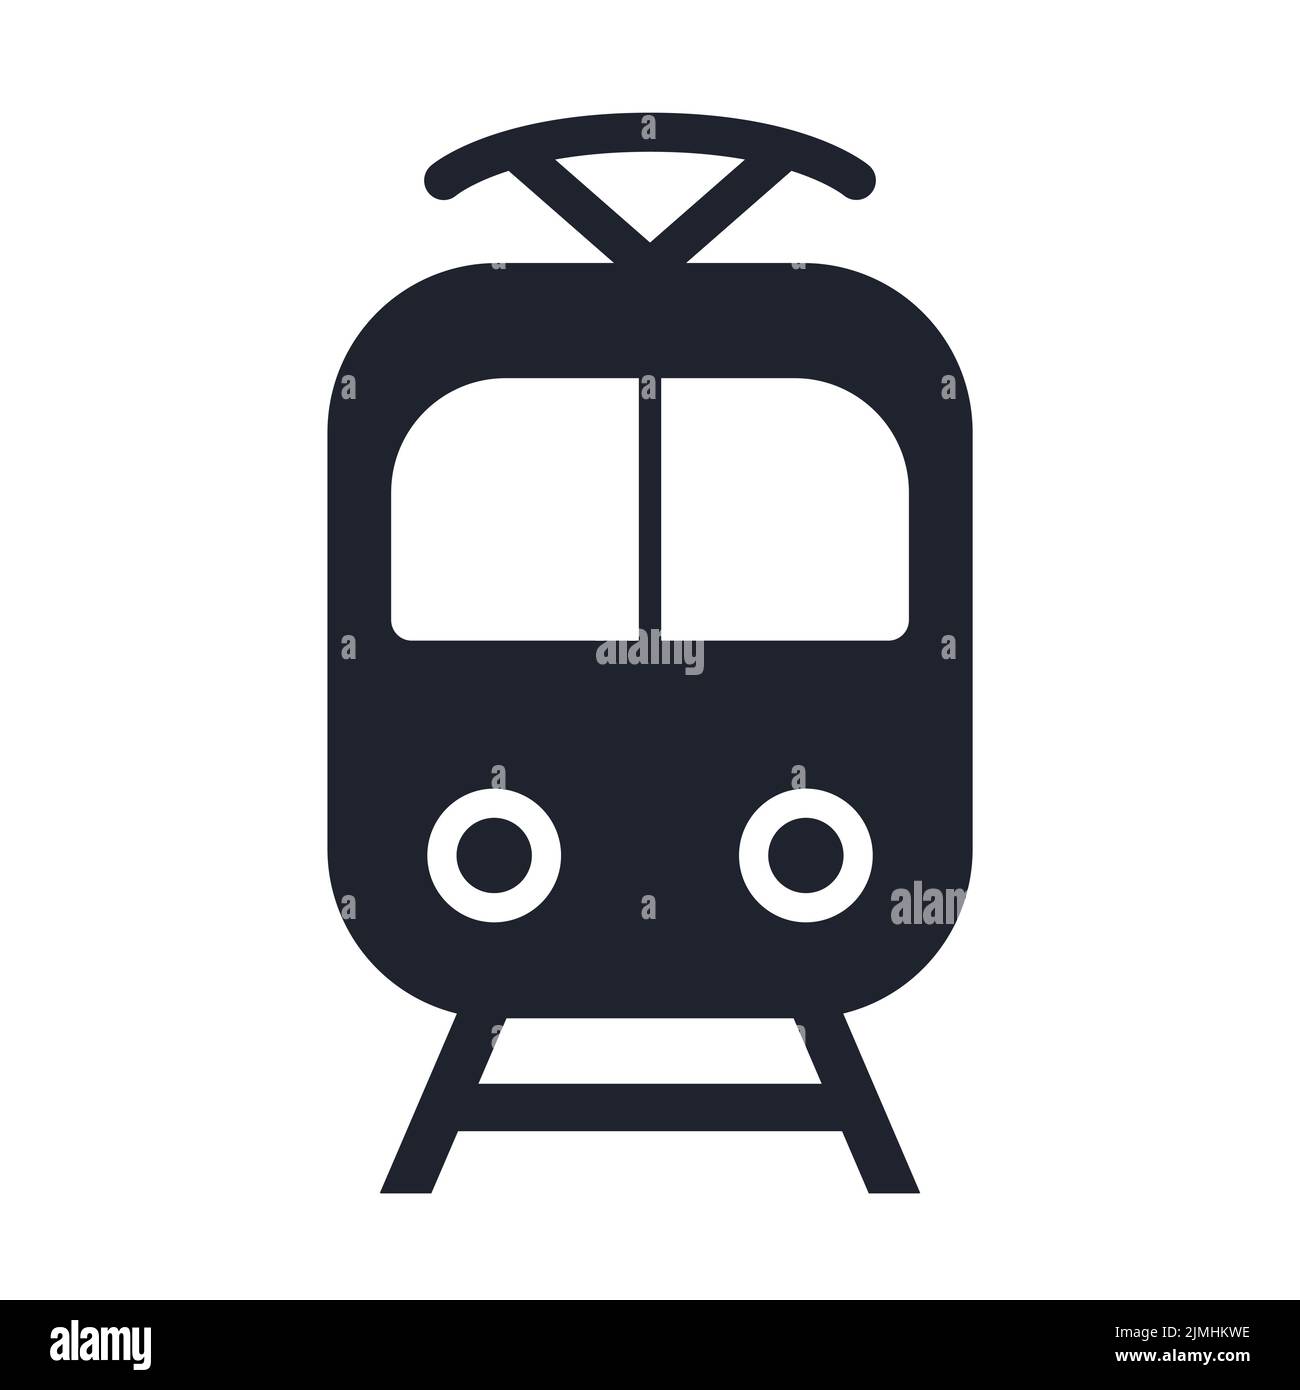 Tren tranvía metro ferrocarril subterráneo tranvía icono de tranvía Ilustración del Vector